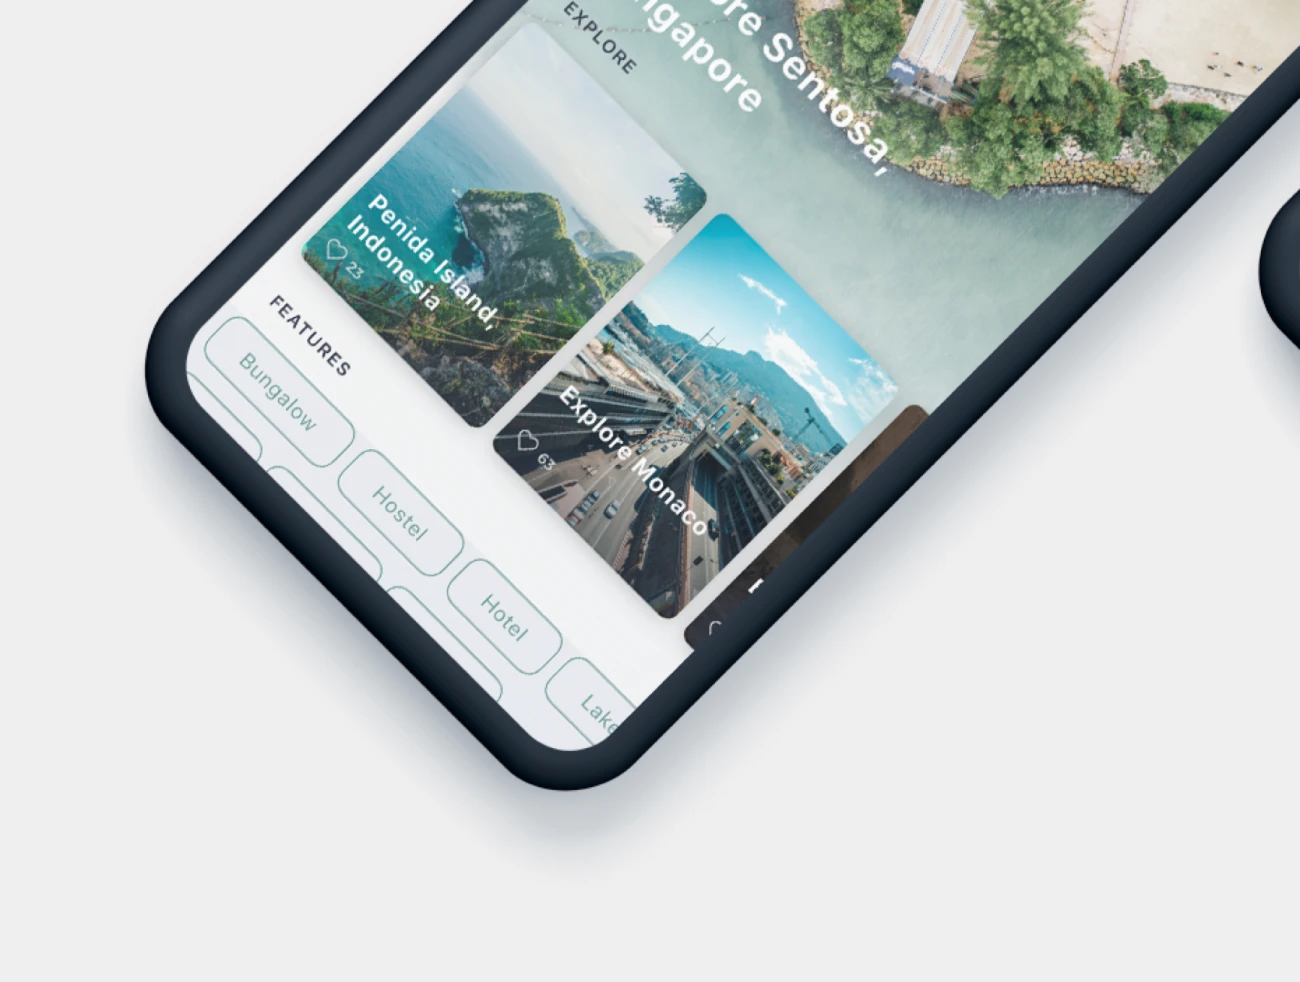 Gezi Travel App UI Kit 旅行app应用UI套件-UI/UX-到位啦UI